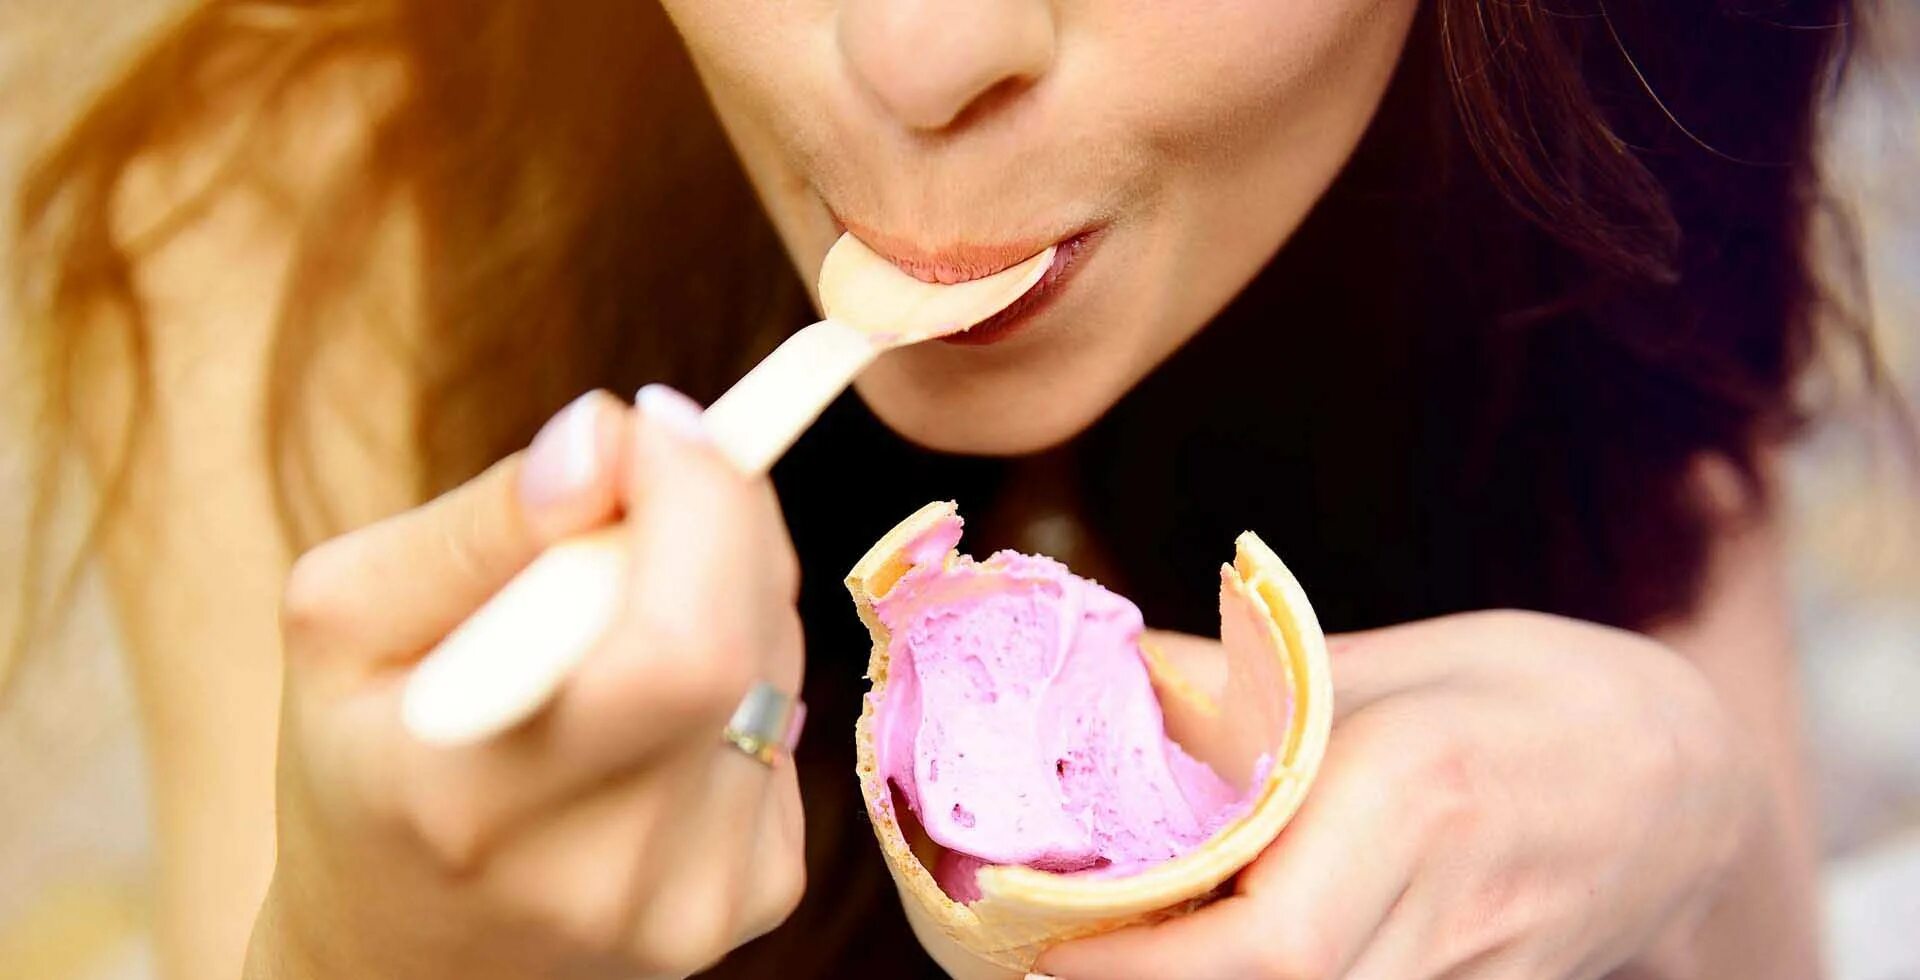 Кушать мороженое. Ест мороженое. Девушка ест мороженое. Девушка кушает мороженое.